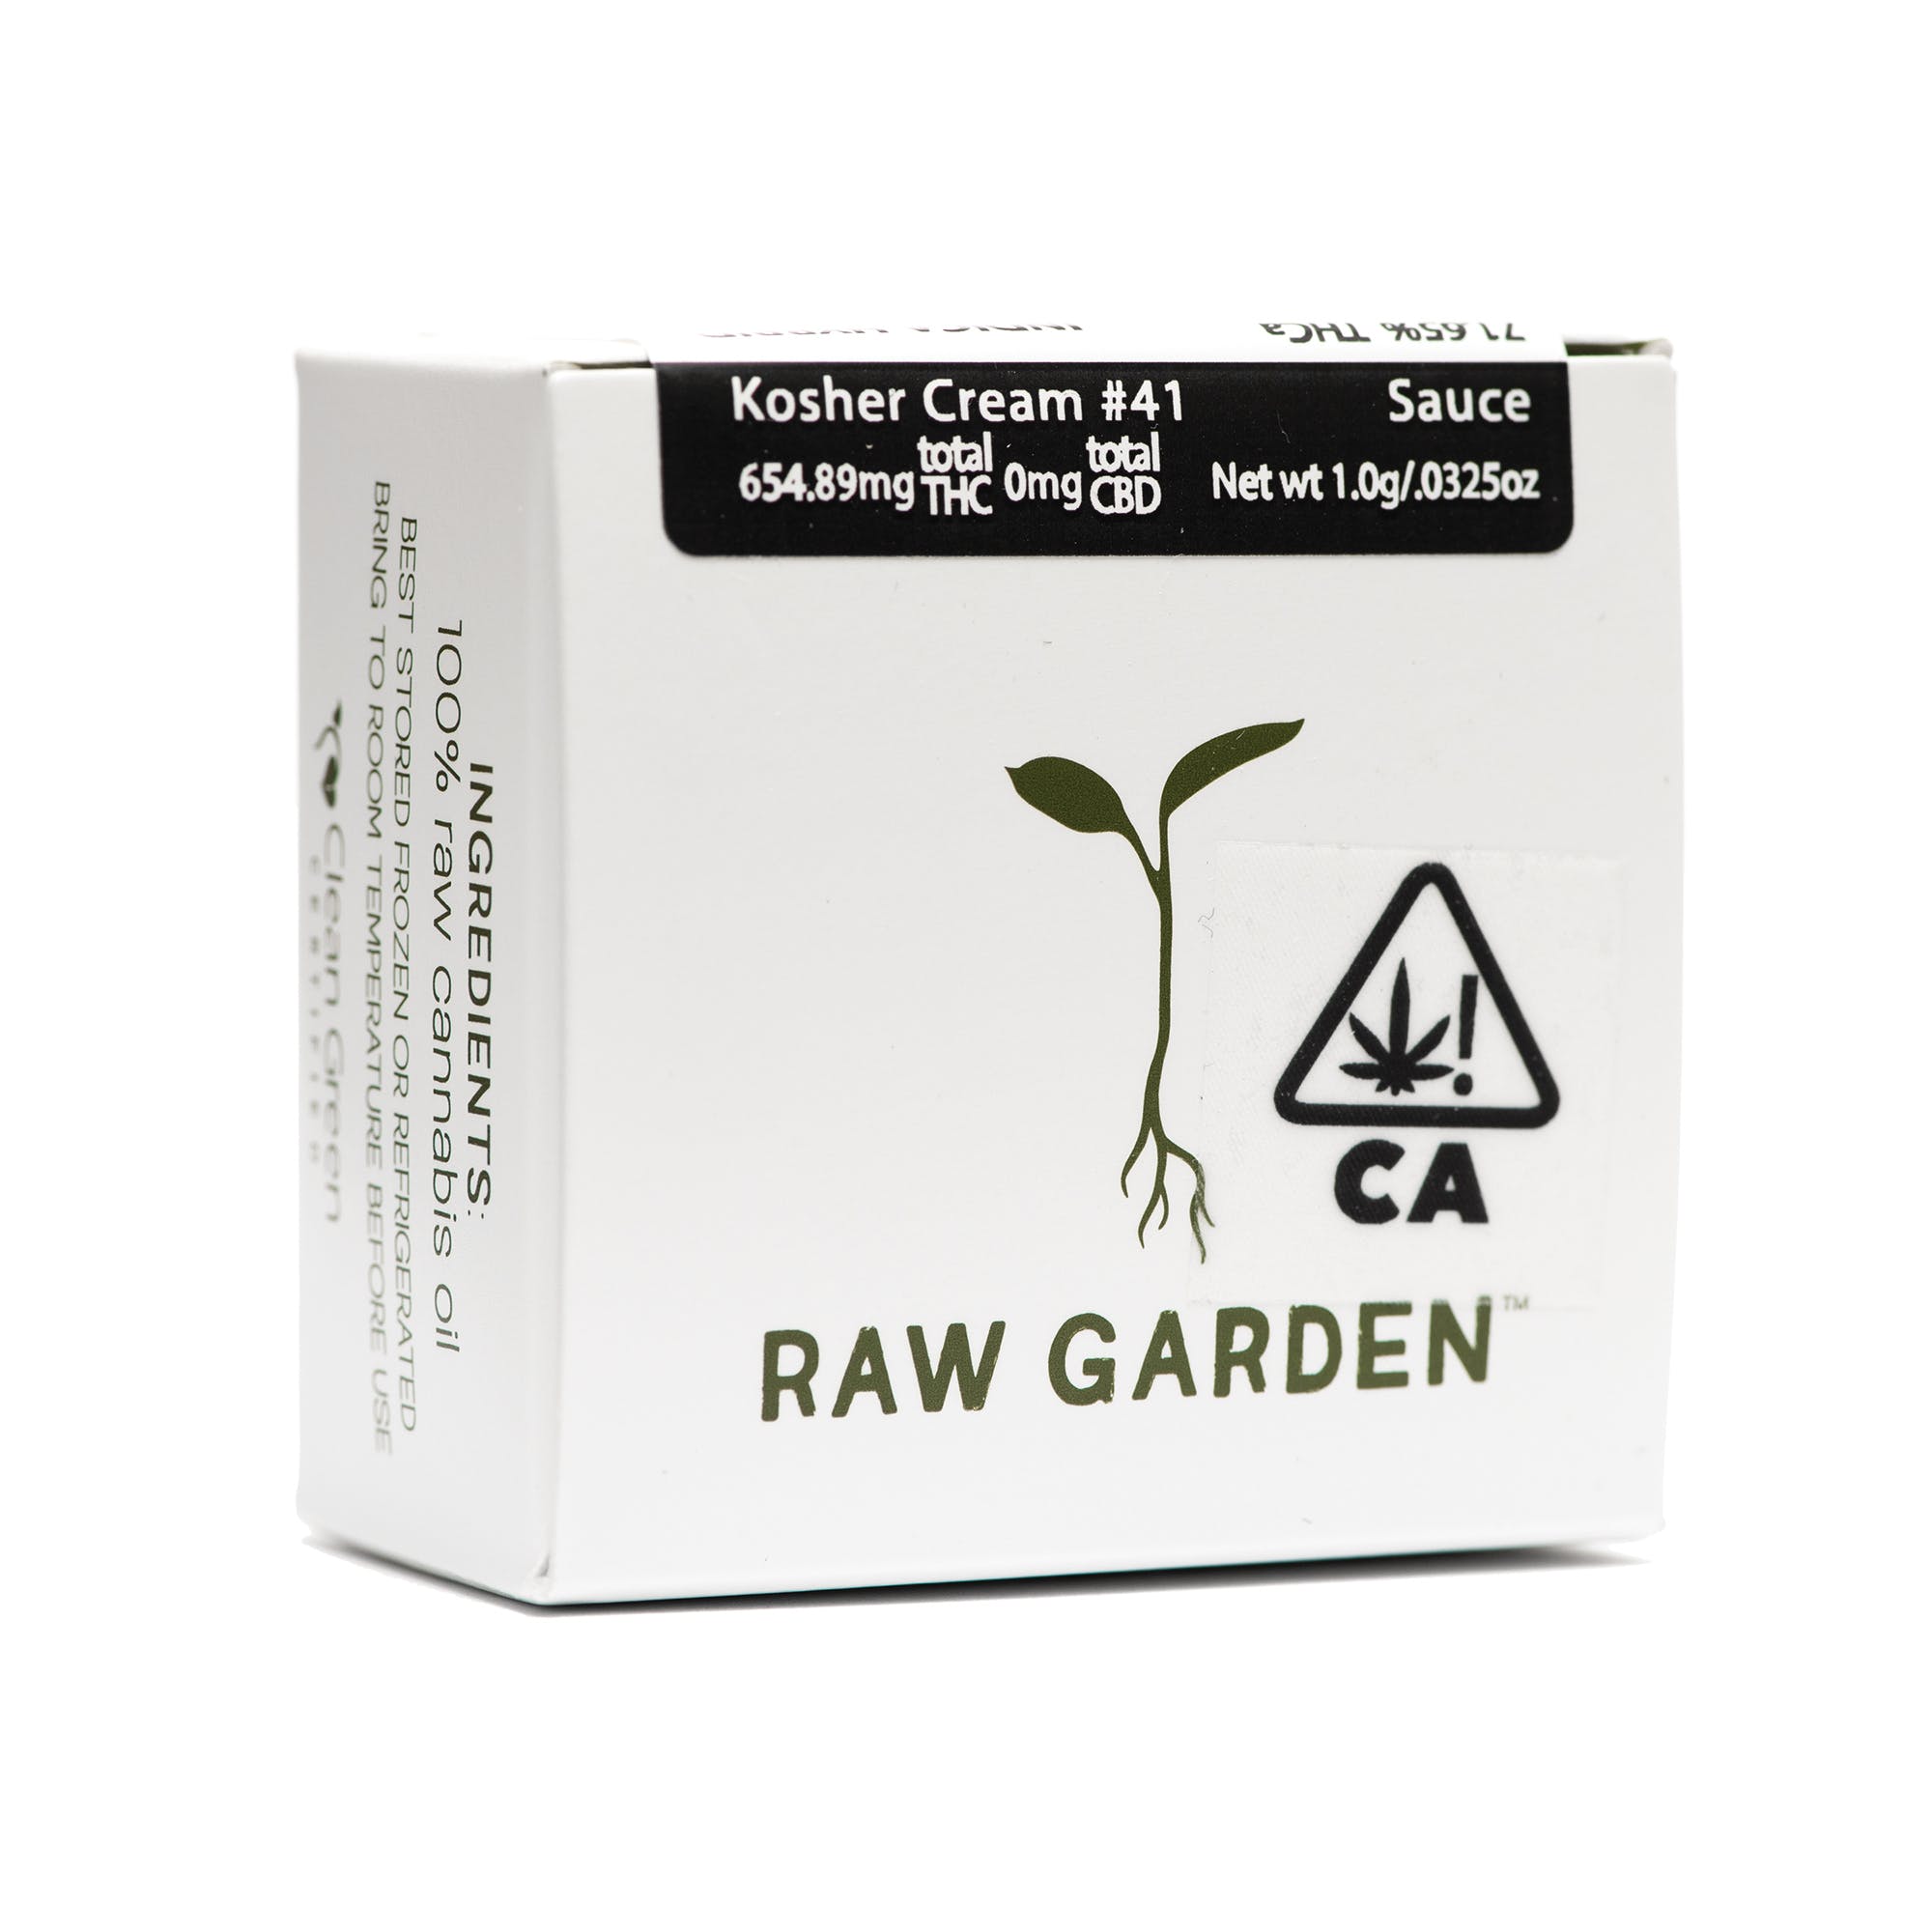 Medical/Online(21+) Raw Garden - Kosher Cream #41 Sauce